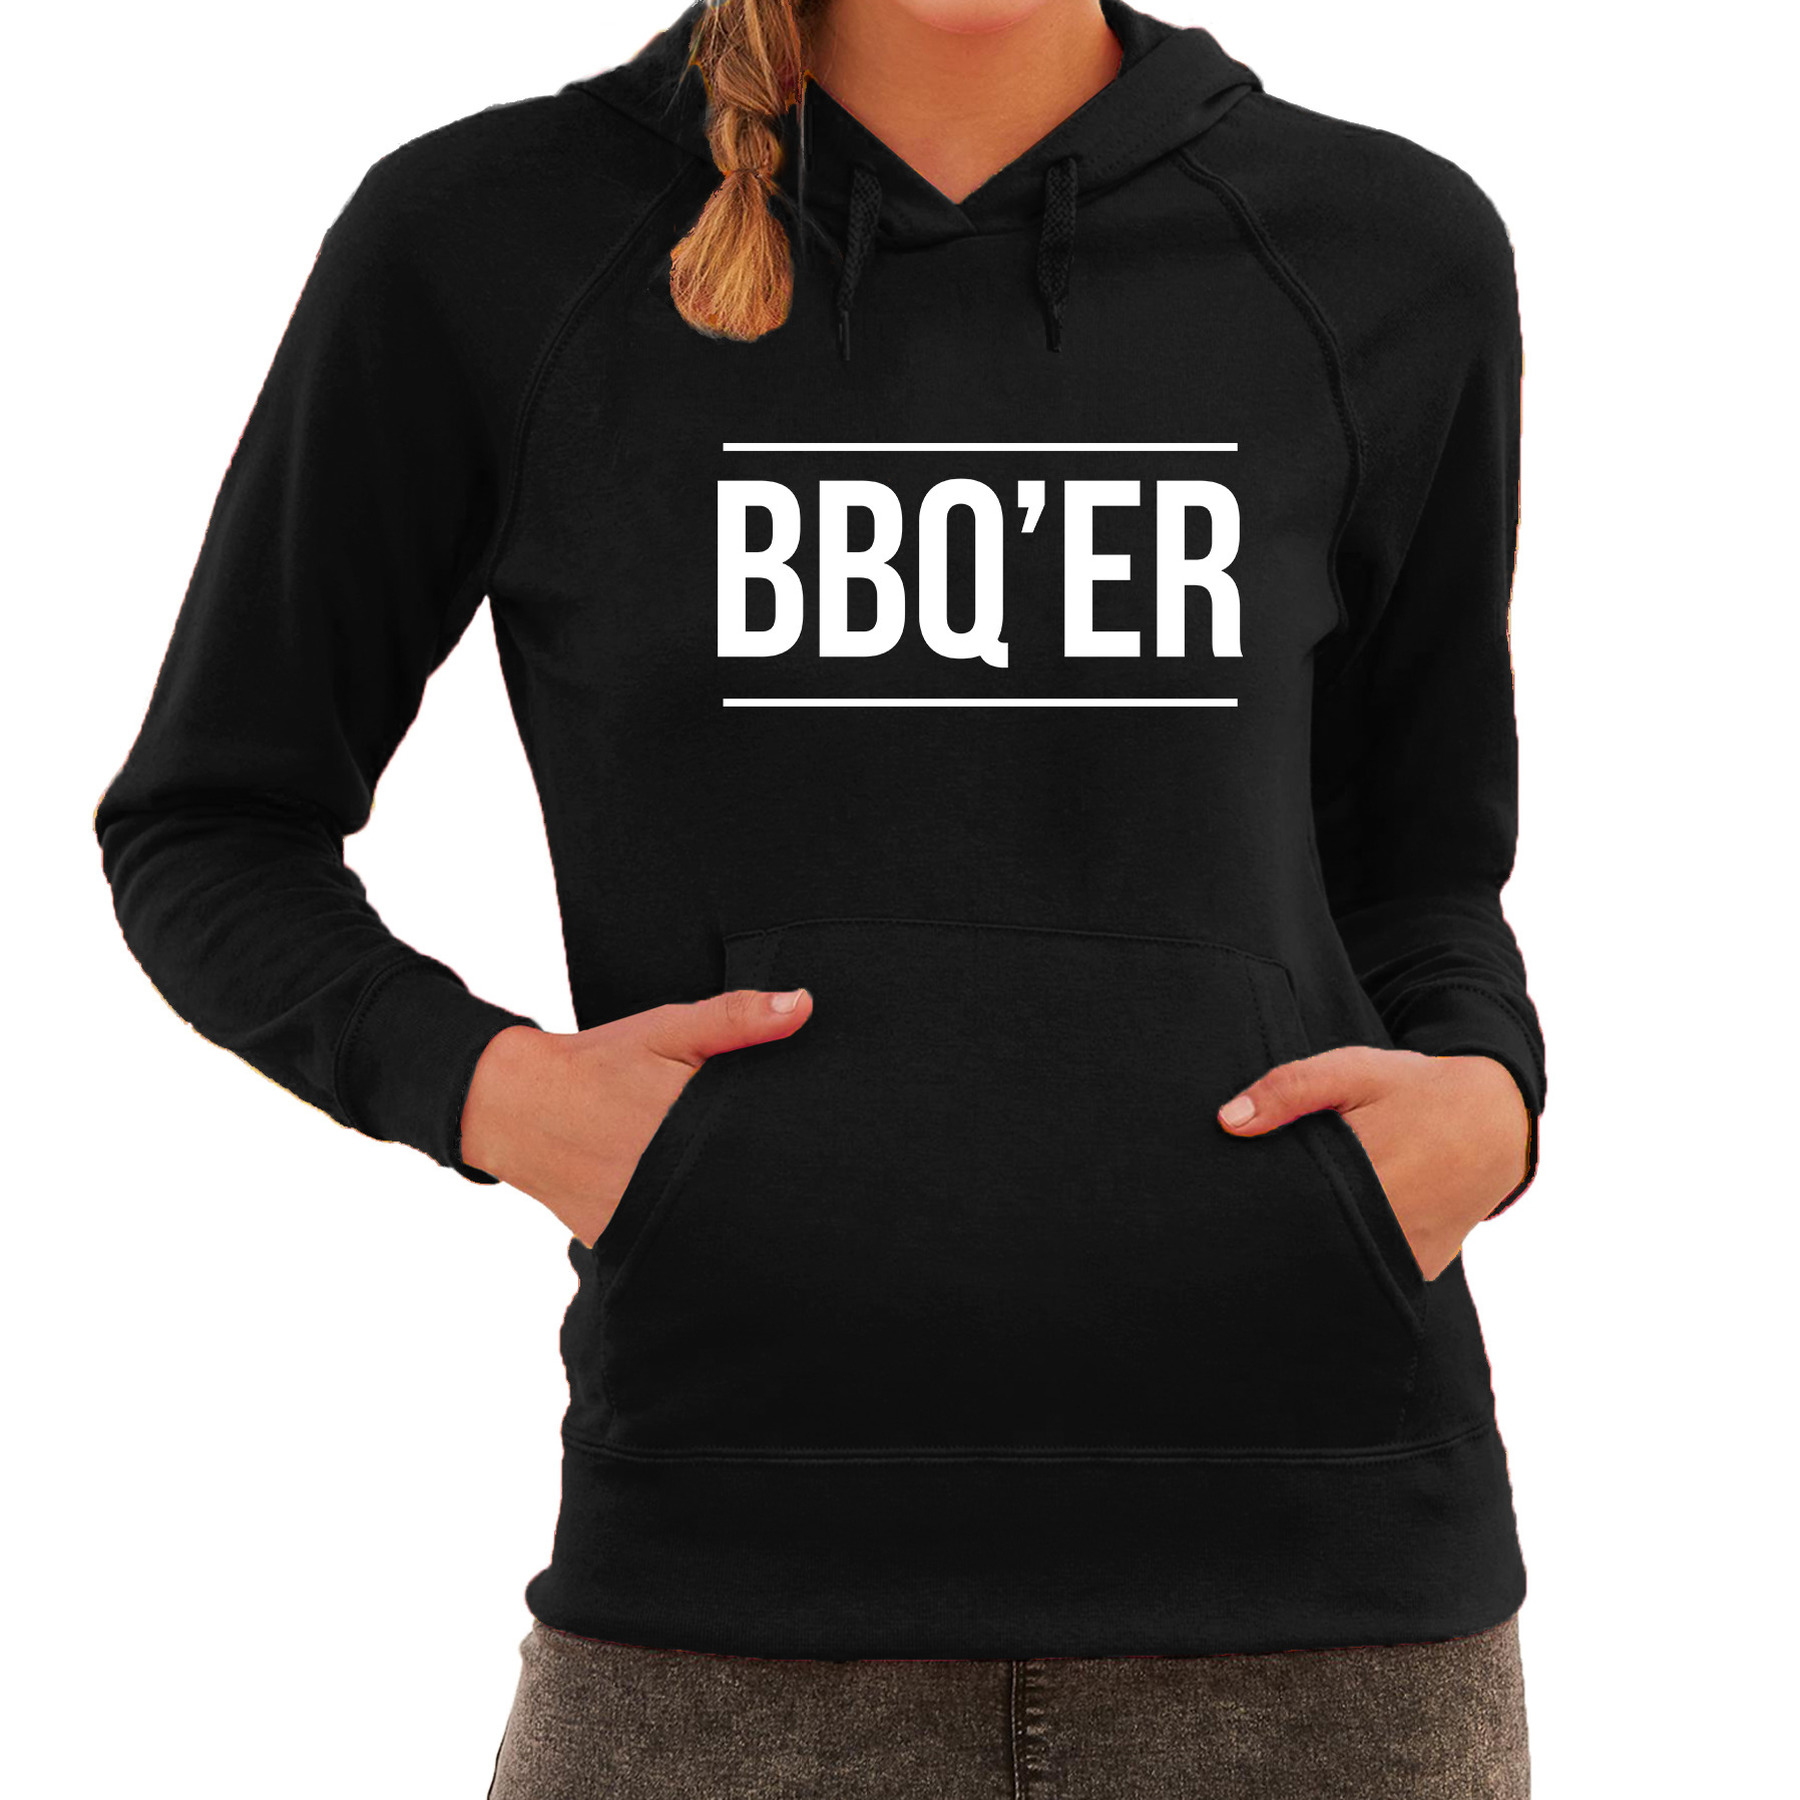 BBQ-ER bbq-barbecue cadeau hoodie zwart voor dames